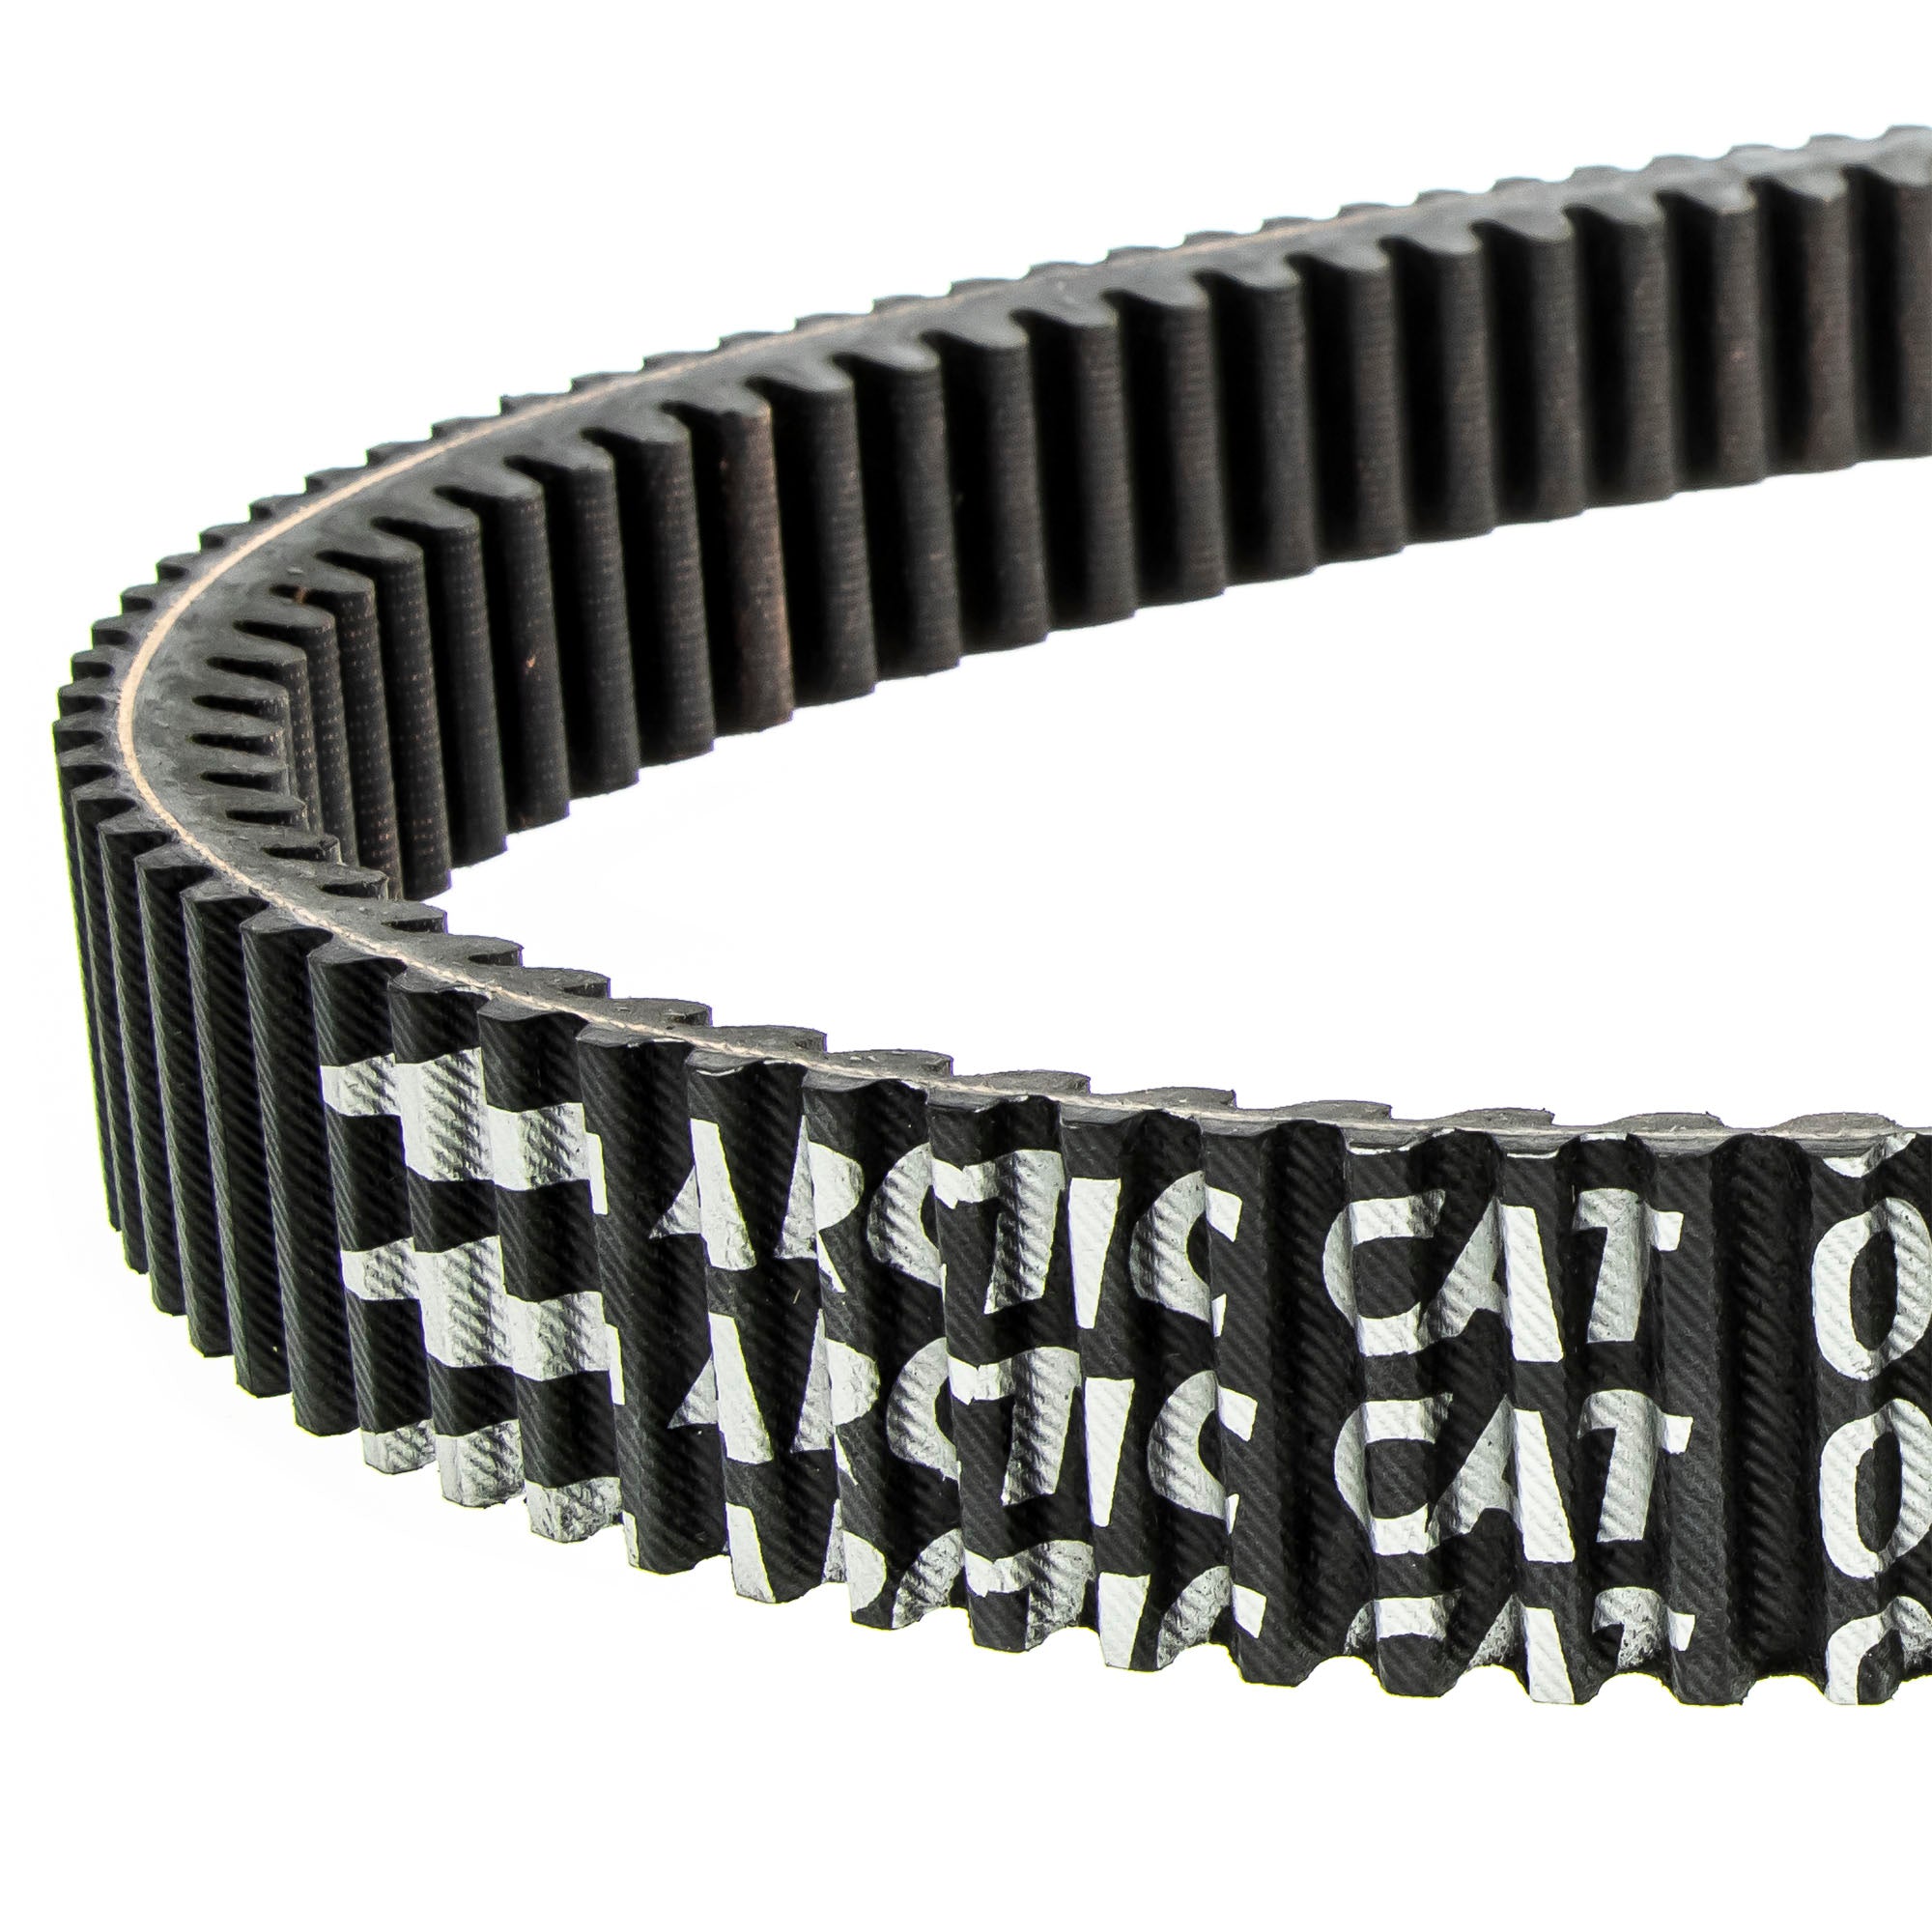 Arctic Cat 0627-112 Drive Belt King Cat Sno Pro Thundercat XF